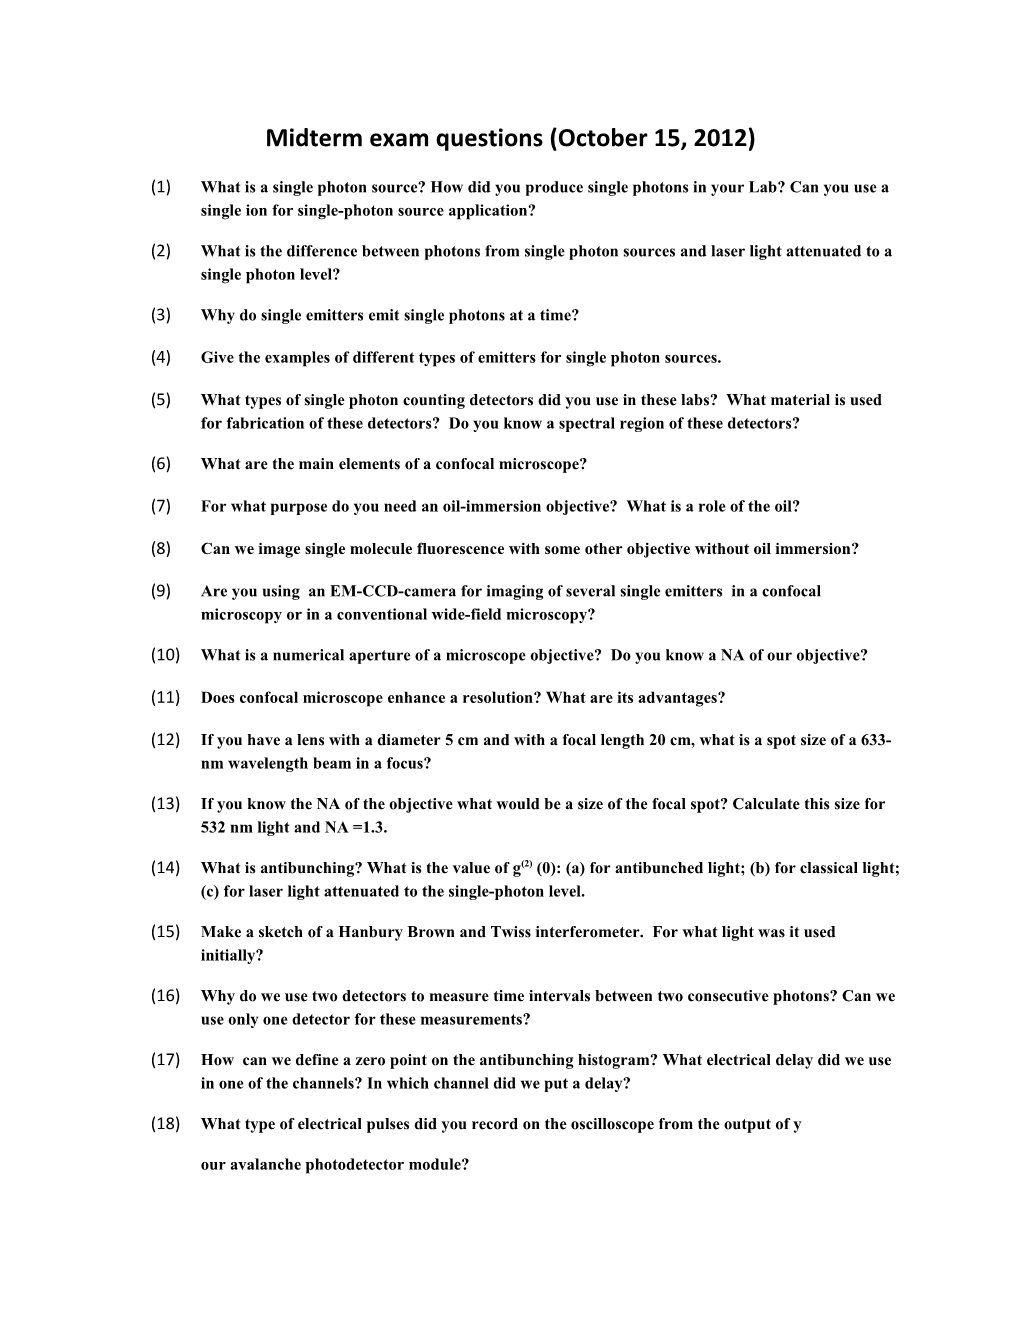 Midterm Exam Questions (October 15, 2012)